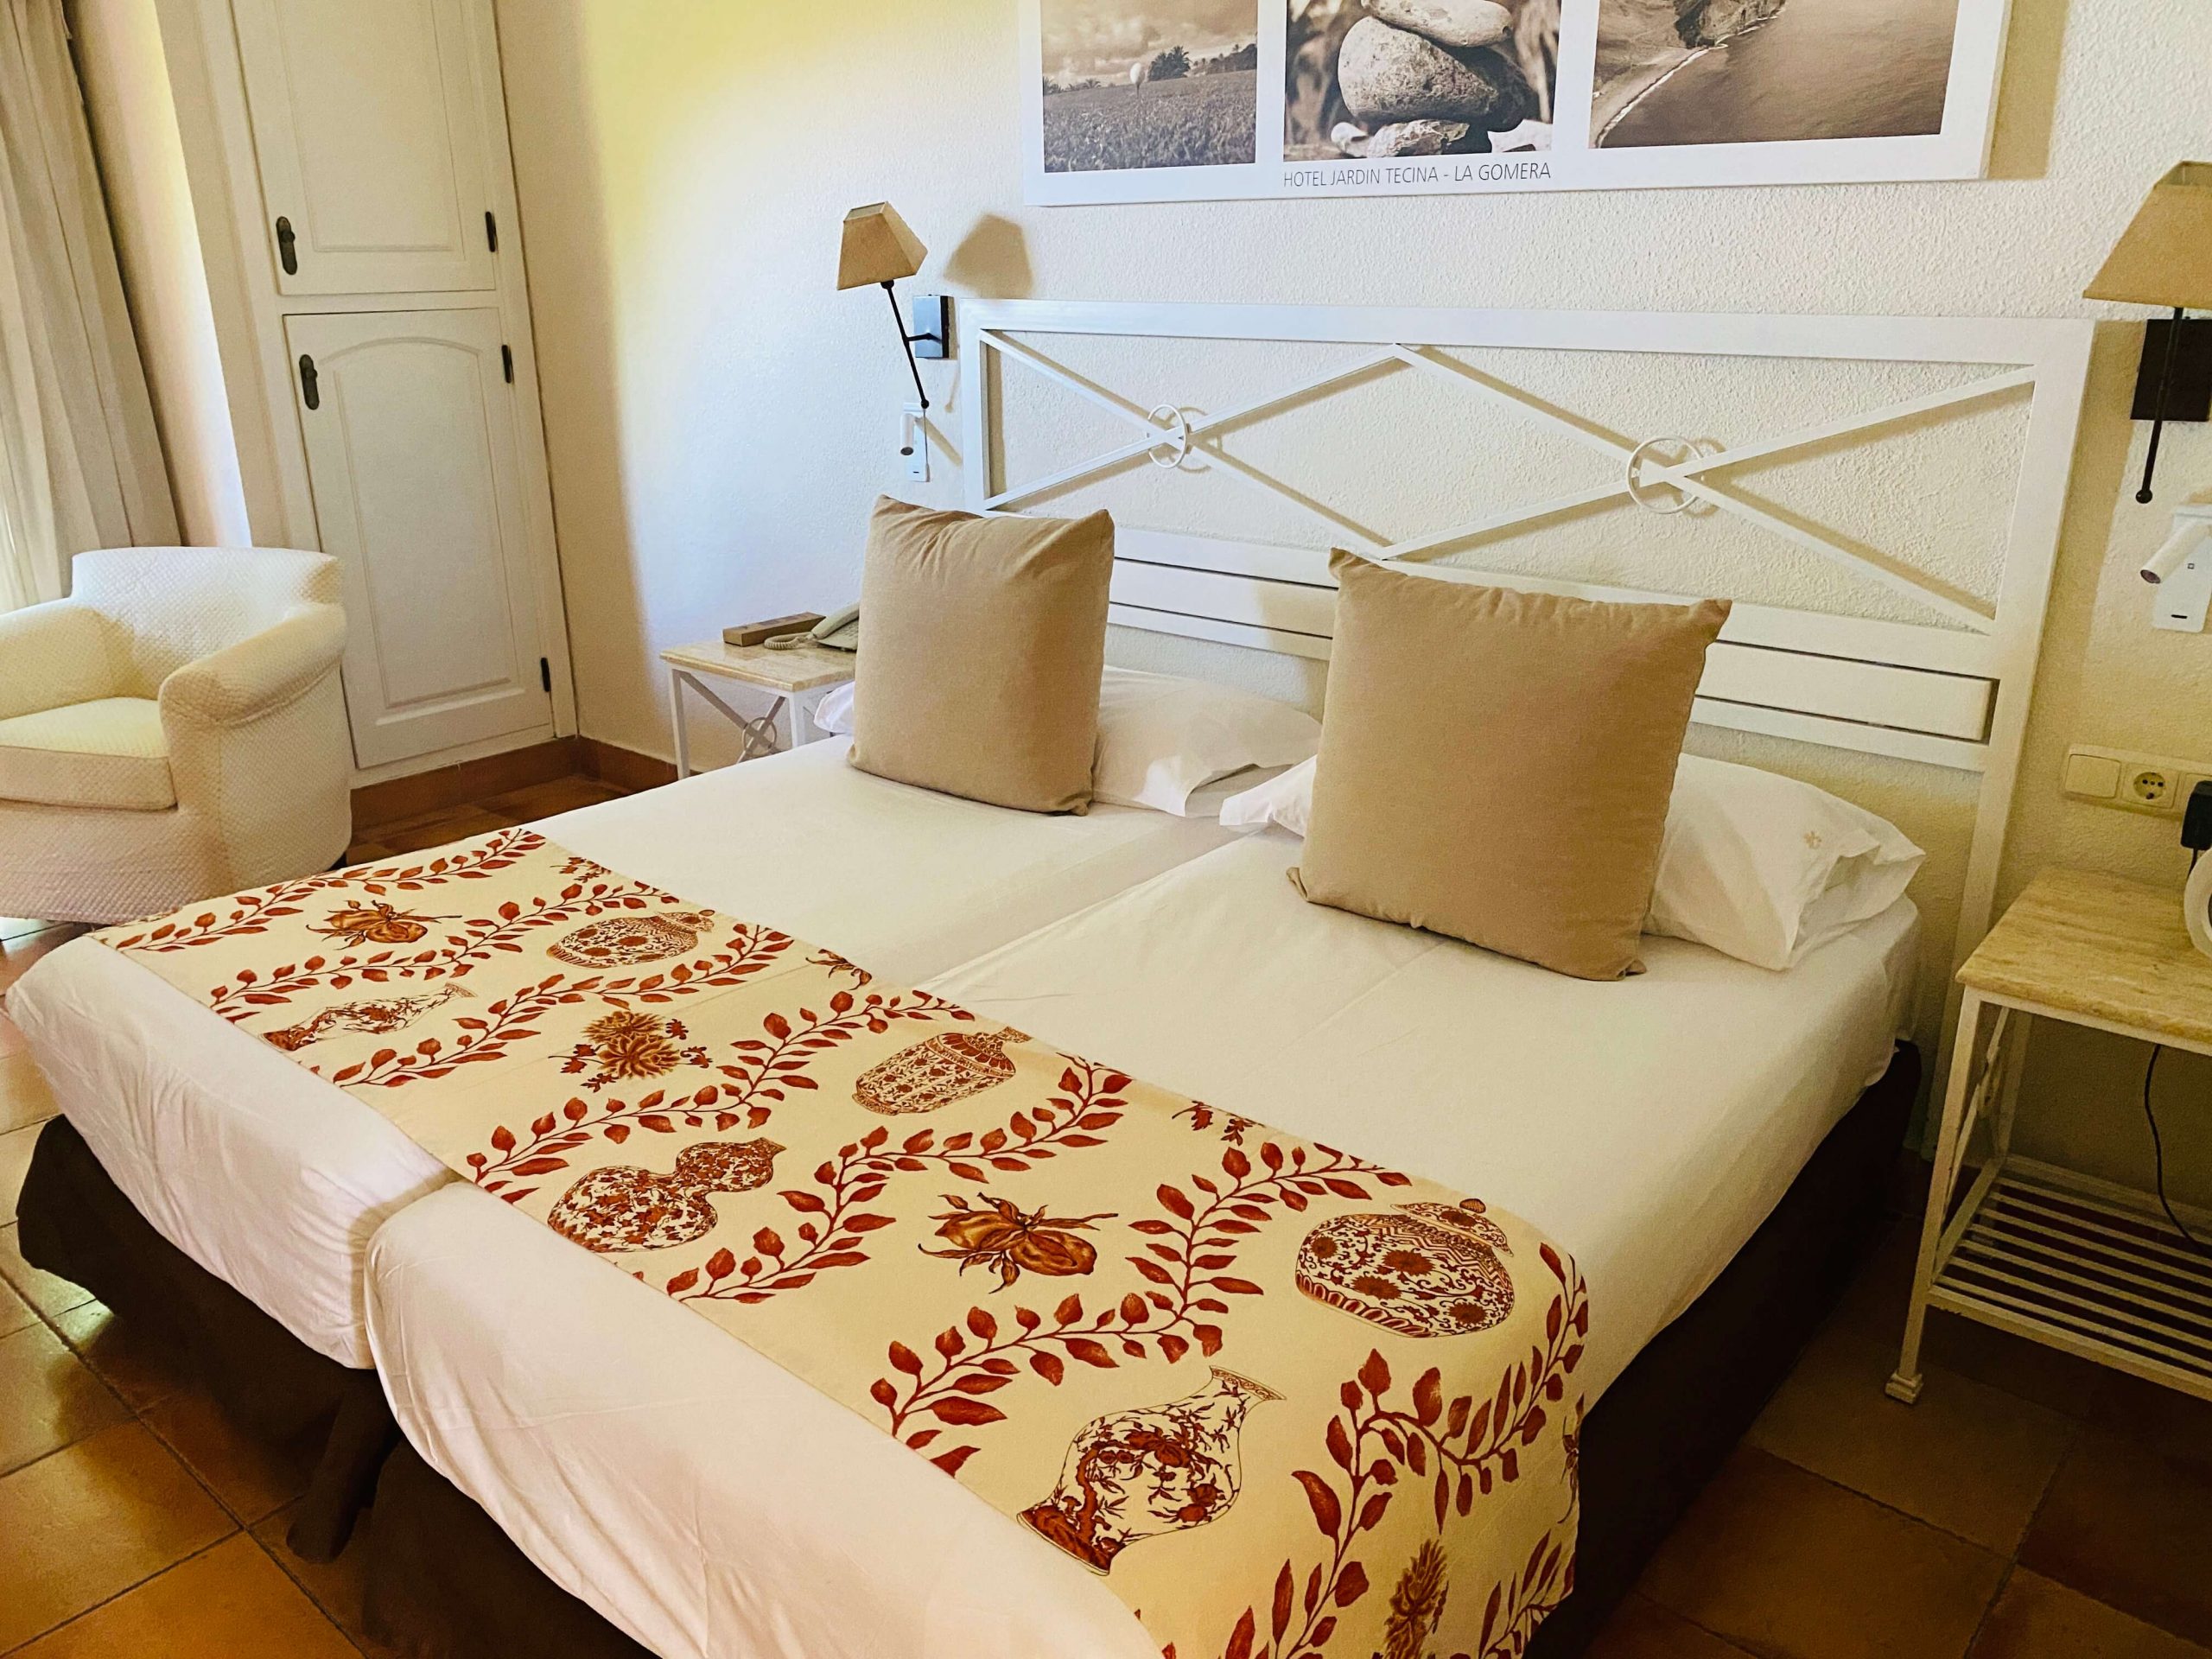 Pokój typu comfort w hotelu Jardin Tencina 